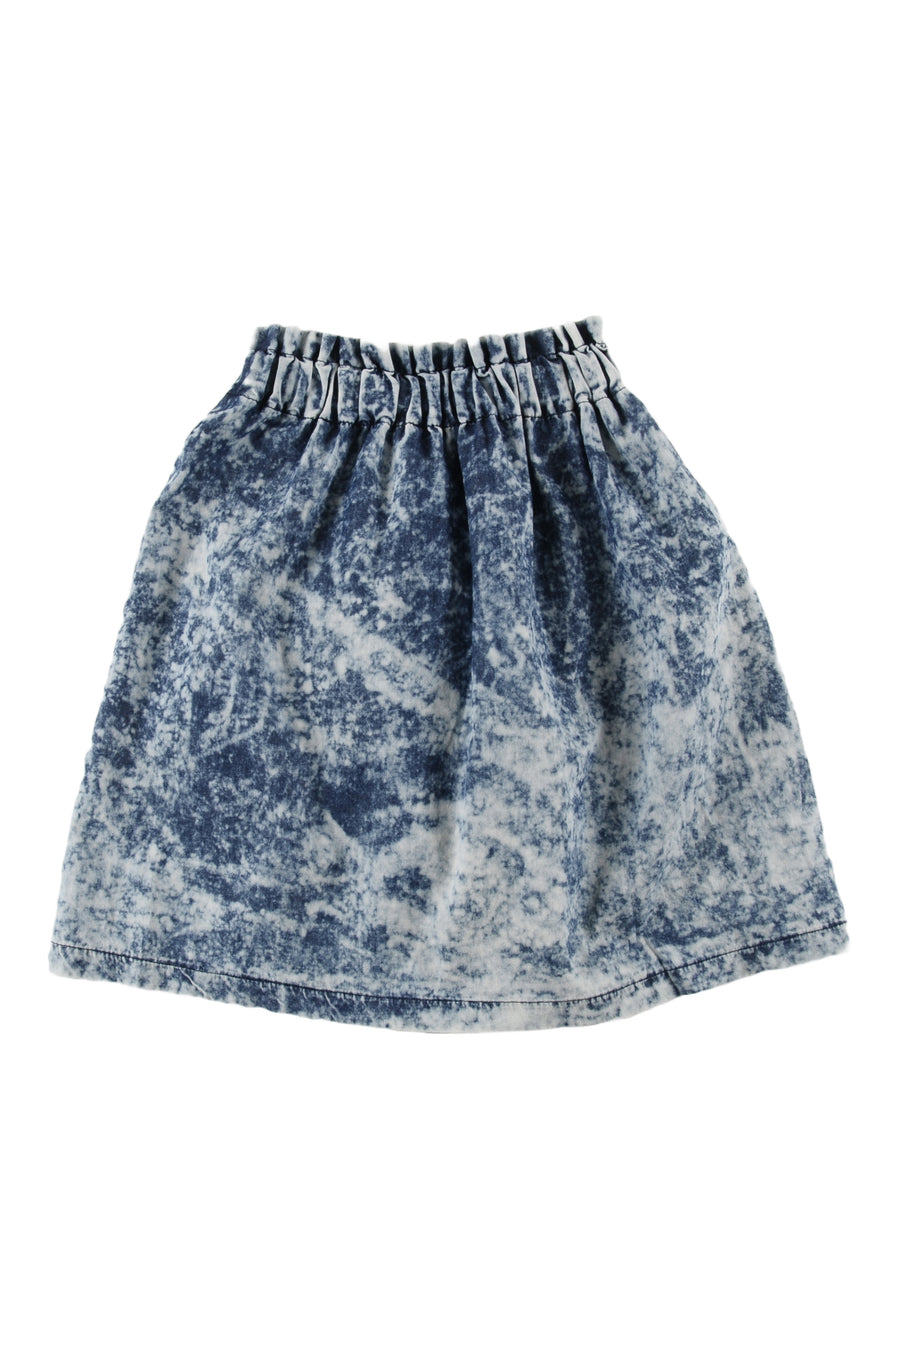 Dye blue pockets skirt by Loud